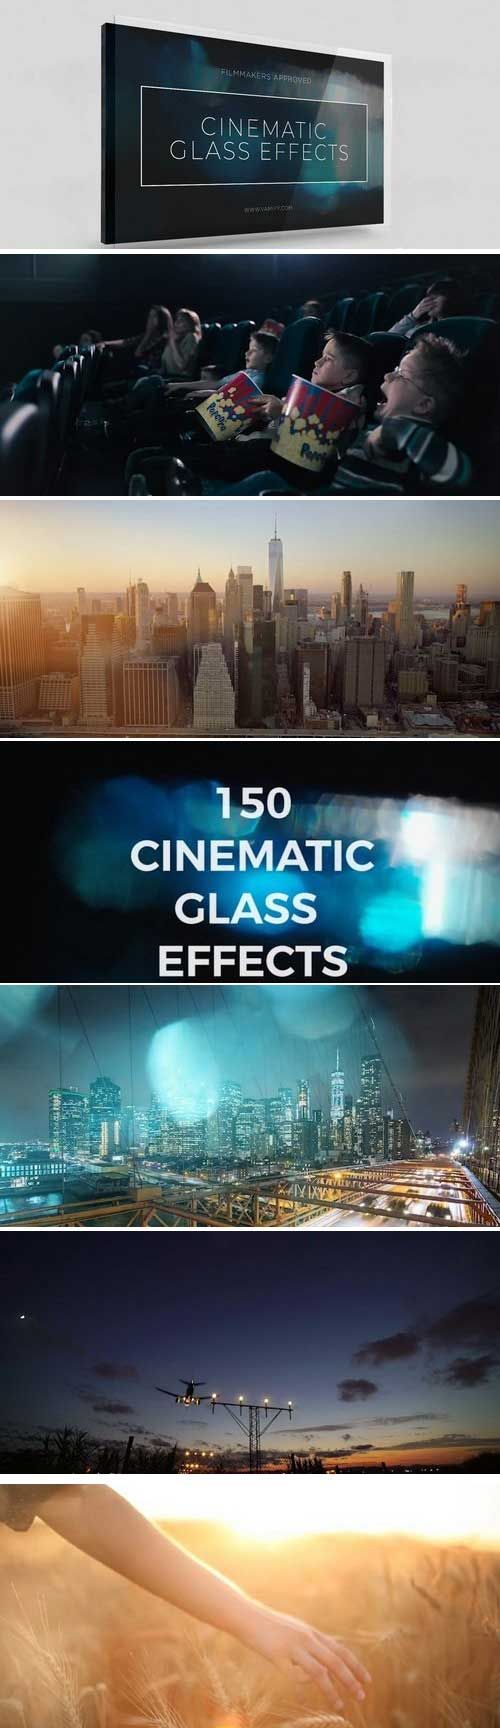 دانلود پکیج فوتیج افکت سینمایی شیشه ای Vamify – Cinematic Glass Effects